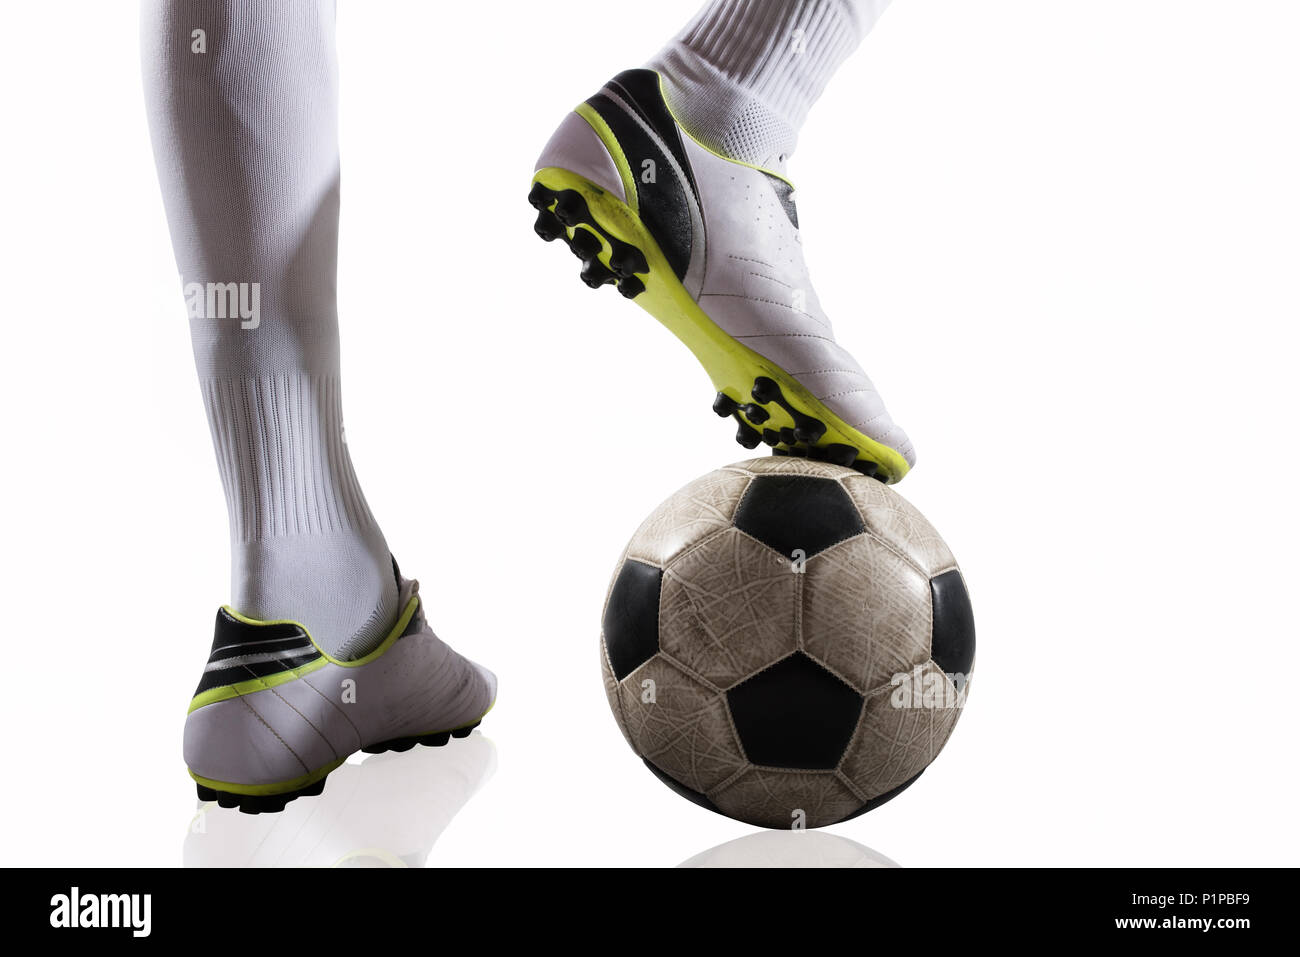 Giocatore di calcio con soccerball pronto per giocare. Isolato su sfondo bianco Foto Stock